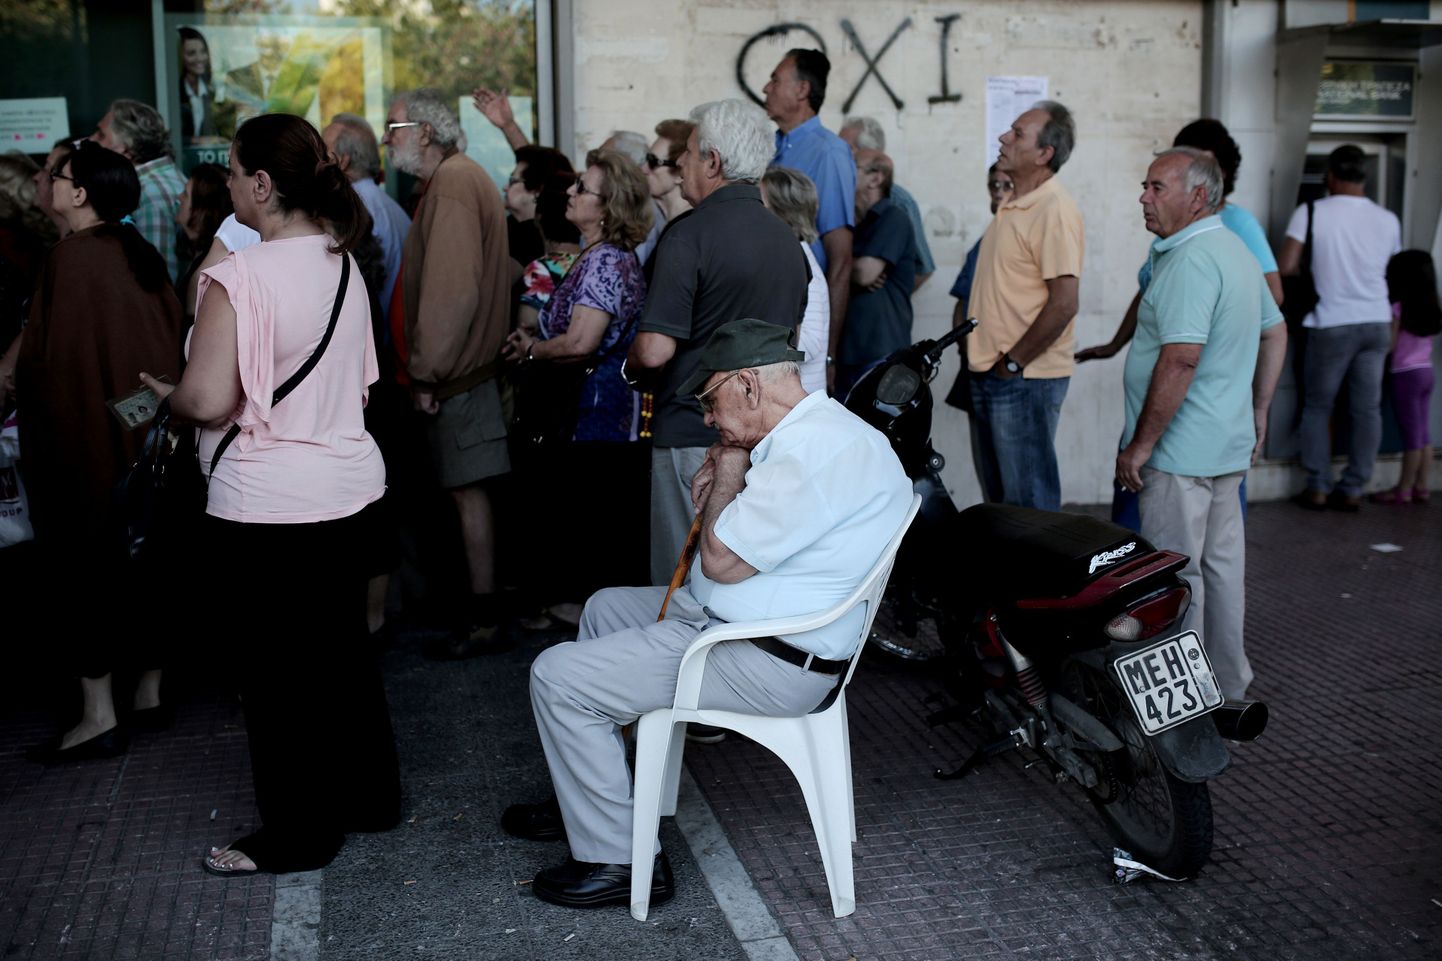 Kreeka pangad avasid täna uksed pensionäridele, kes saavad võtta välja kuni 120 eurot pensionit.